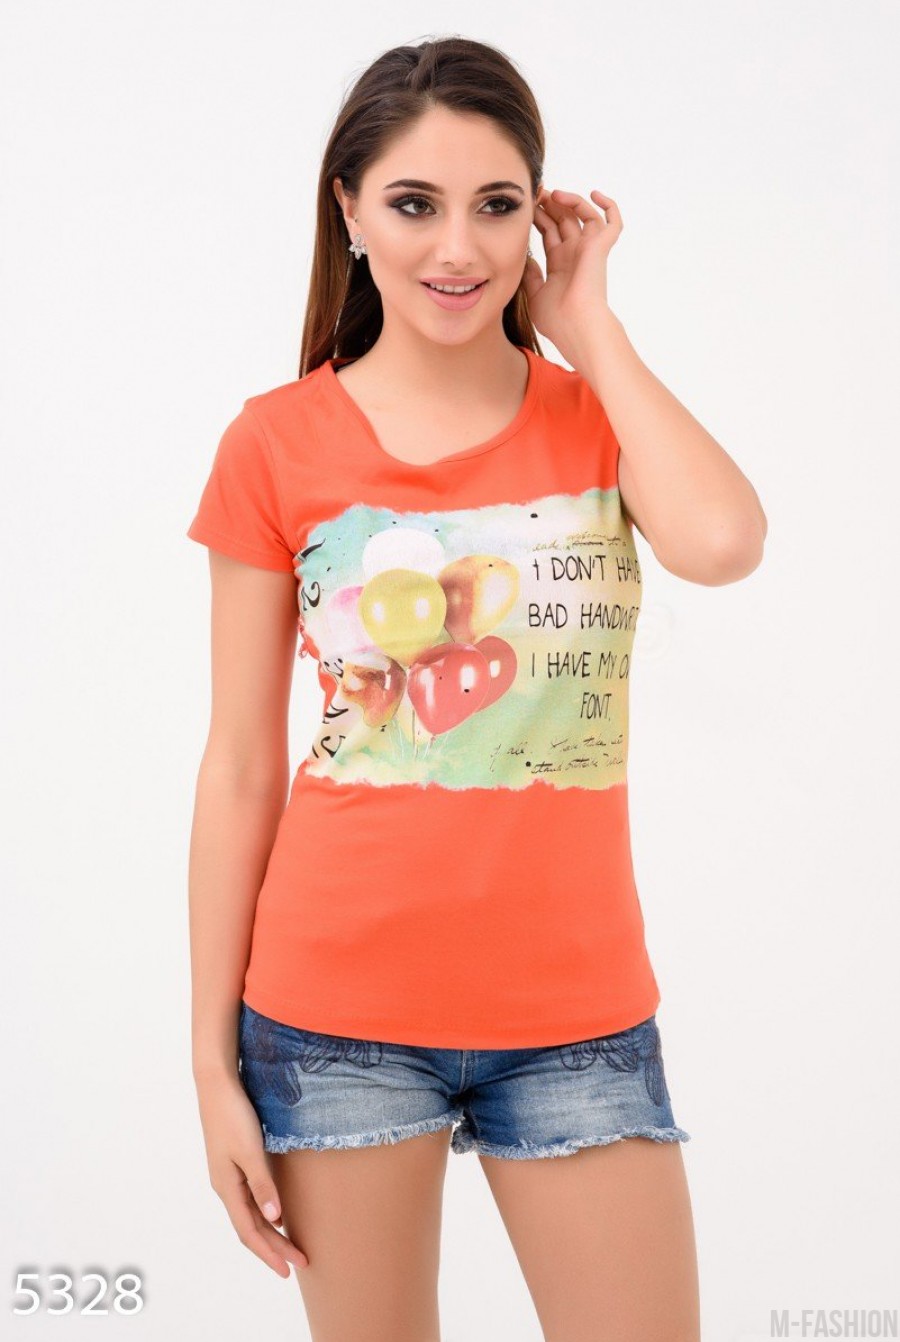 Оранжевая футболка с шарами и смешной надписью - Фото 1